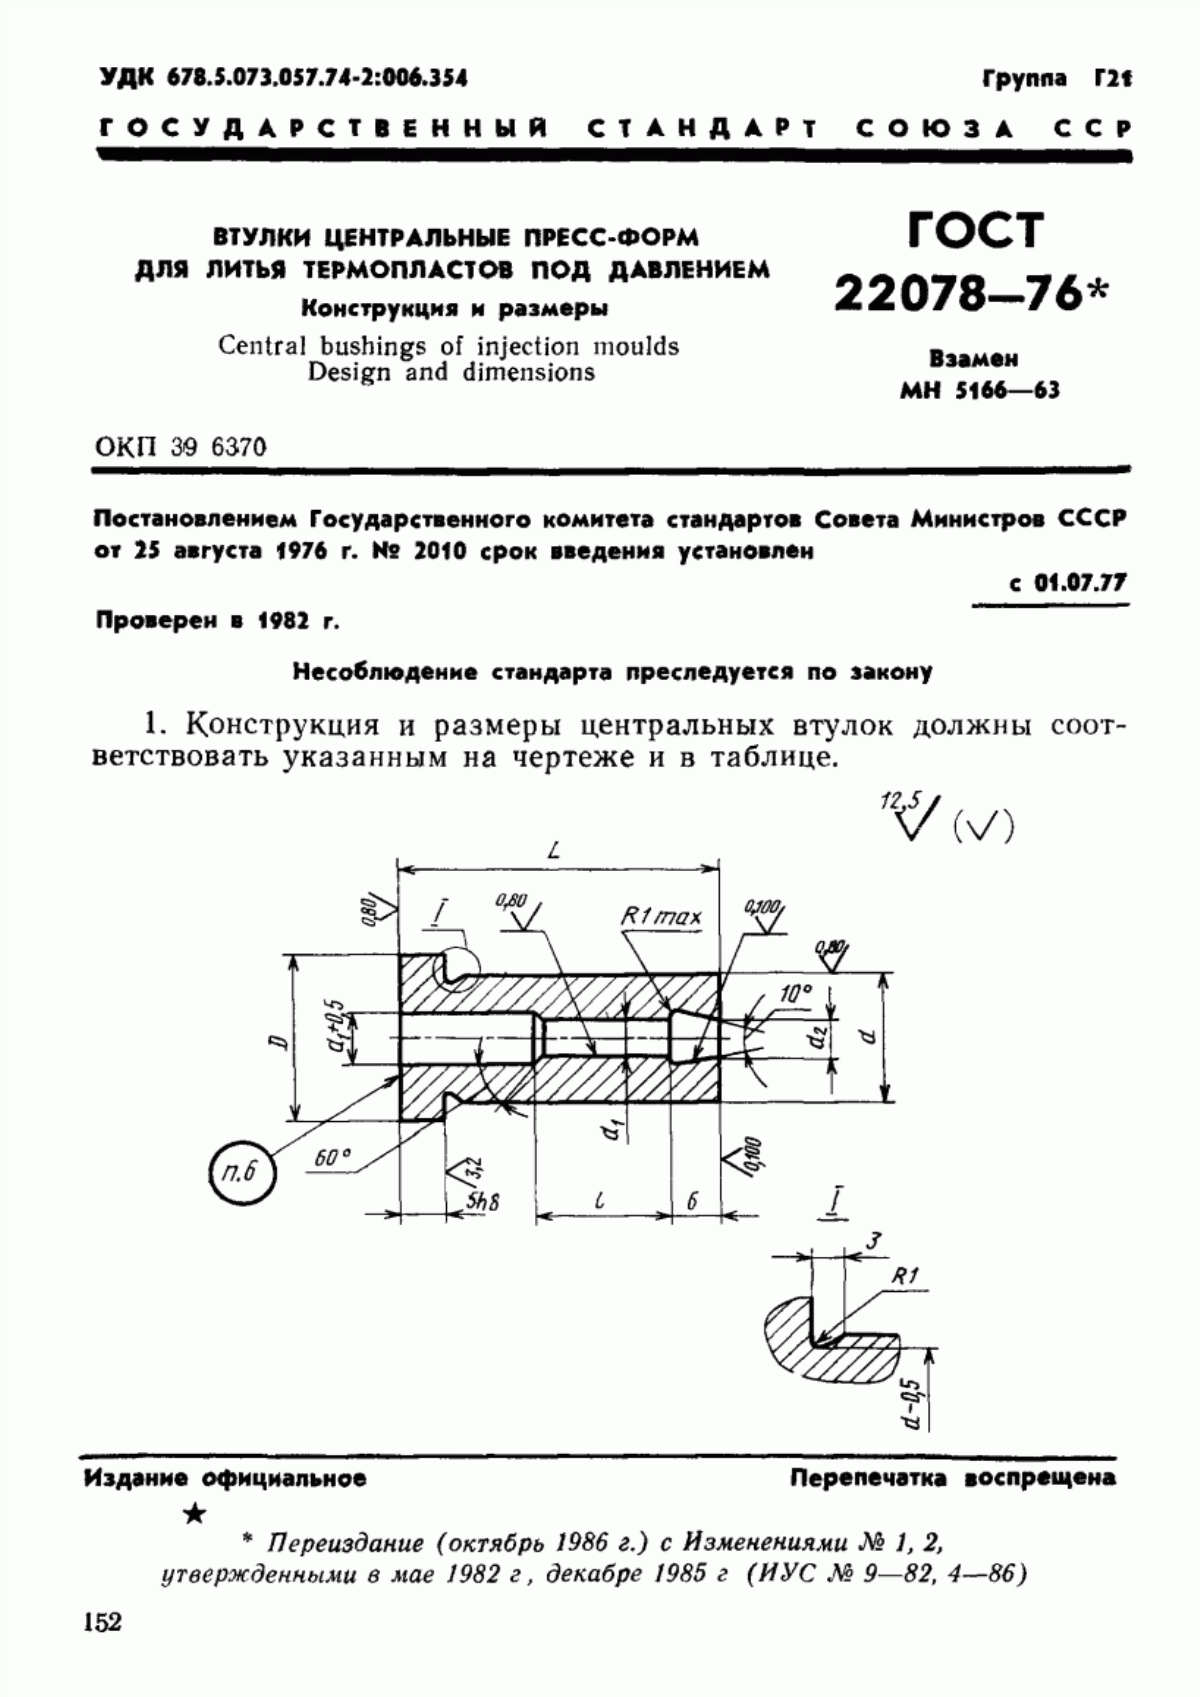 ГОСТ 22078-76 Втулки центральные пресс-форм для литья термопластов под давлением. Конструкция и размеры